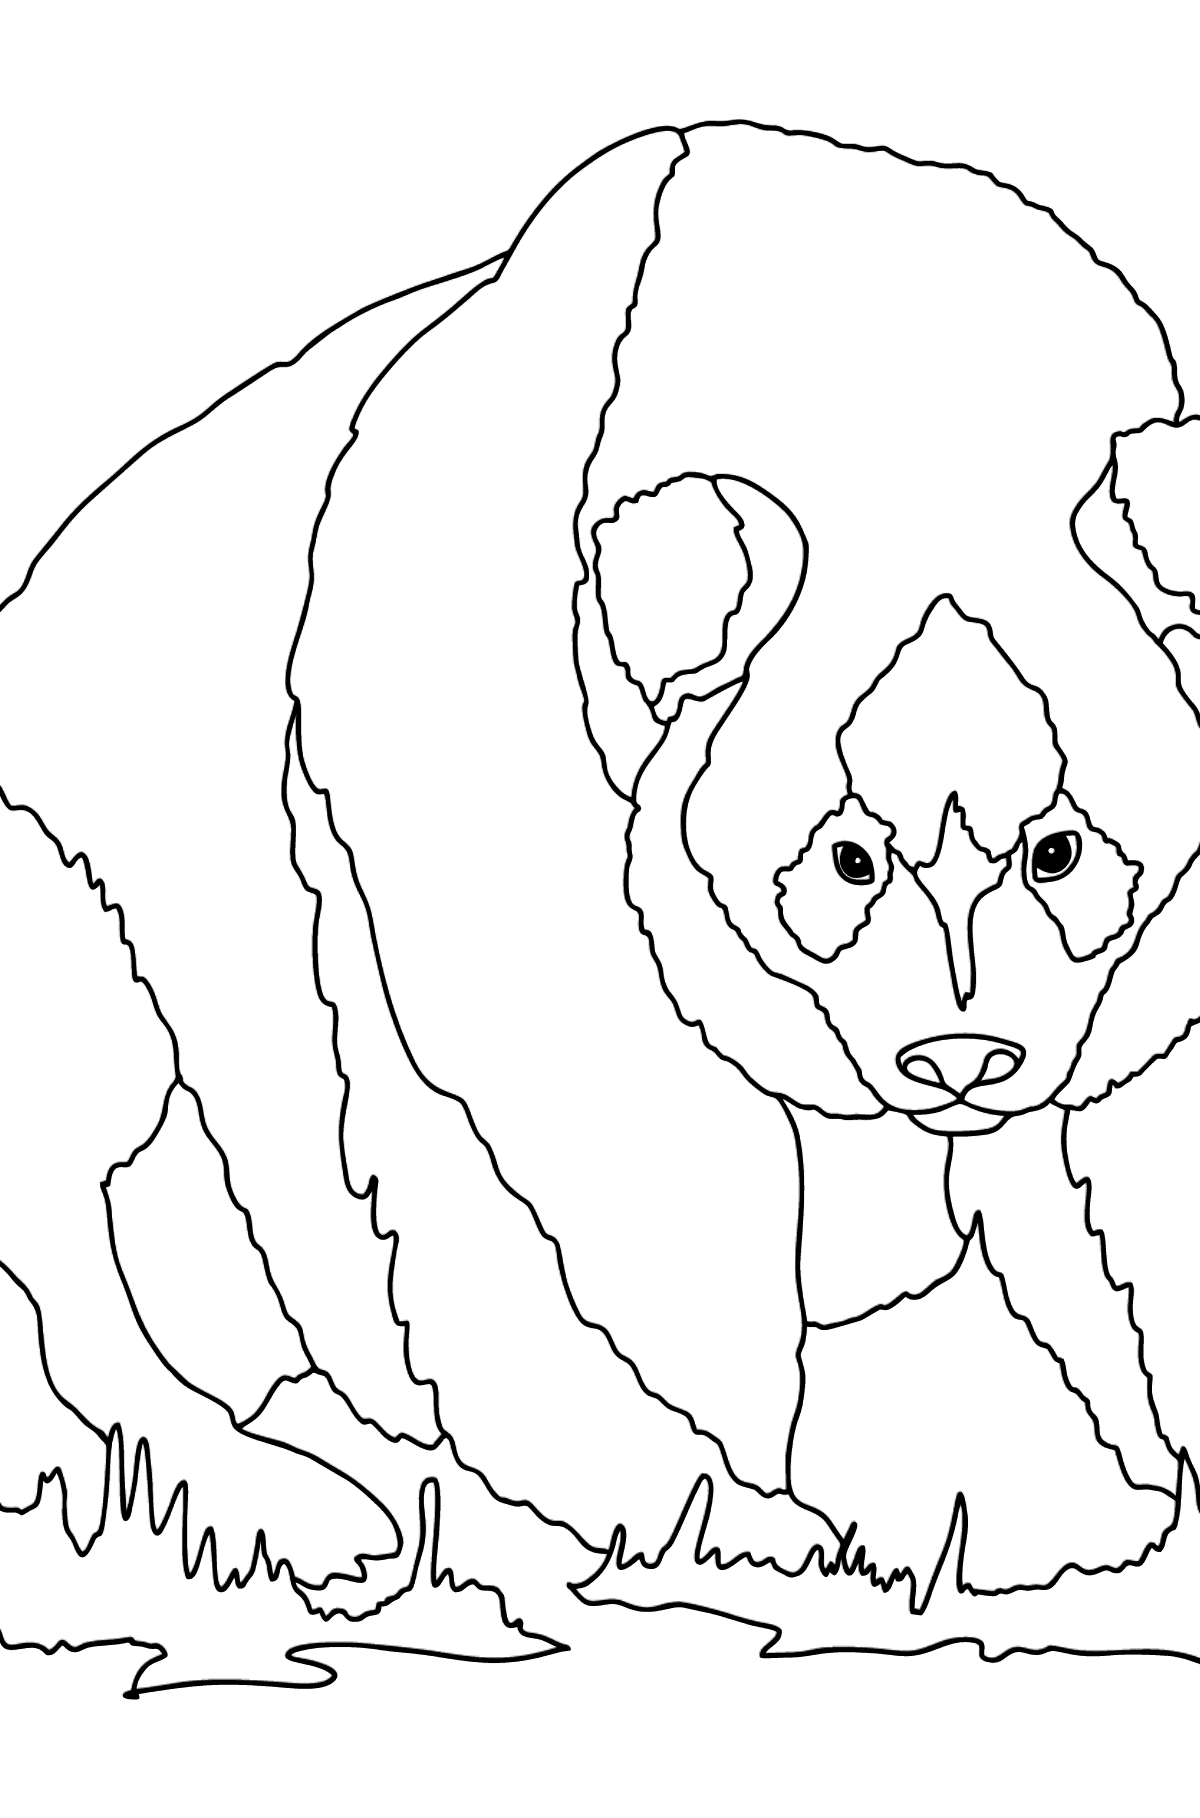 Kleurplaat zachte panda (moeilijk) - kleurplaten voor kinderen